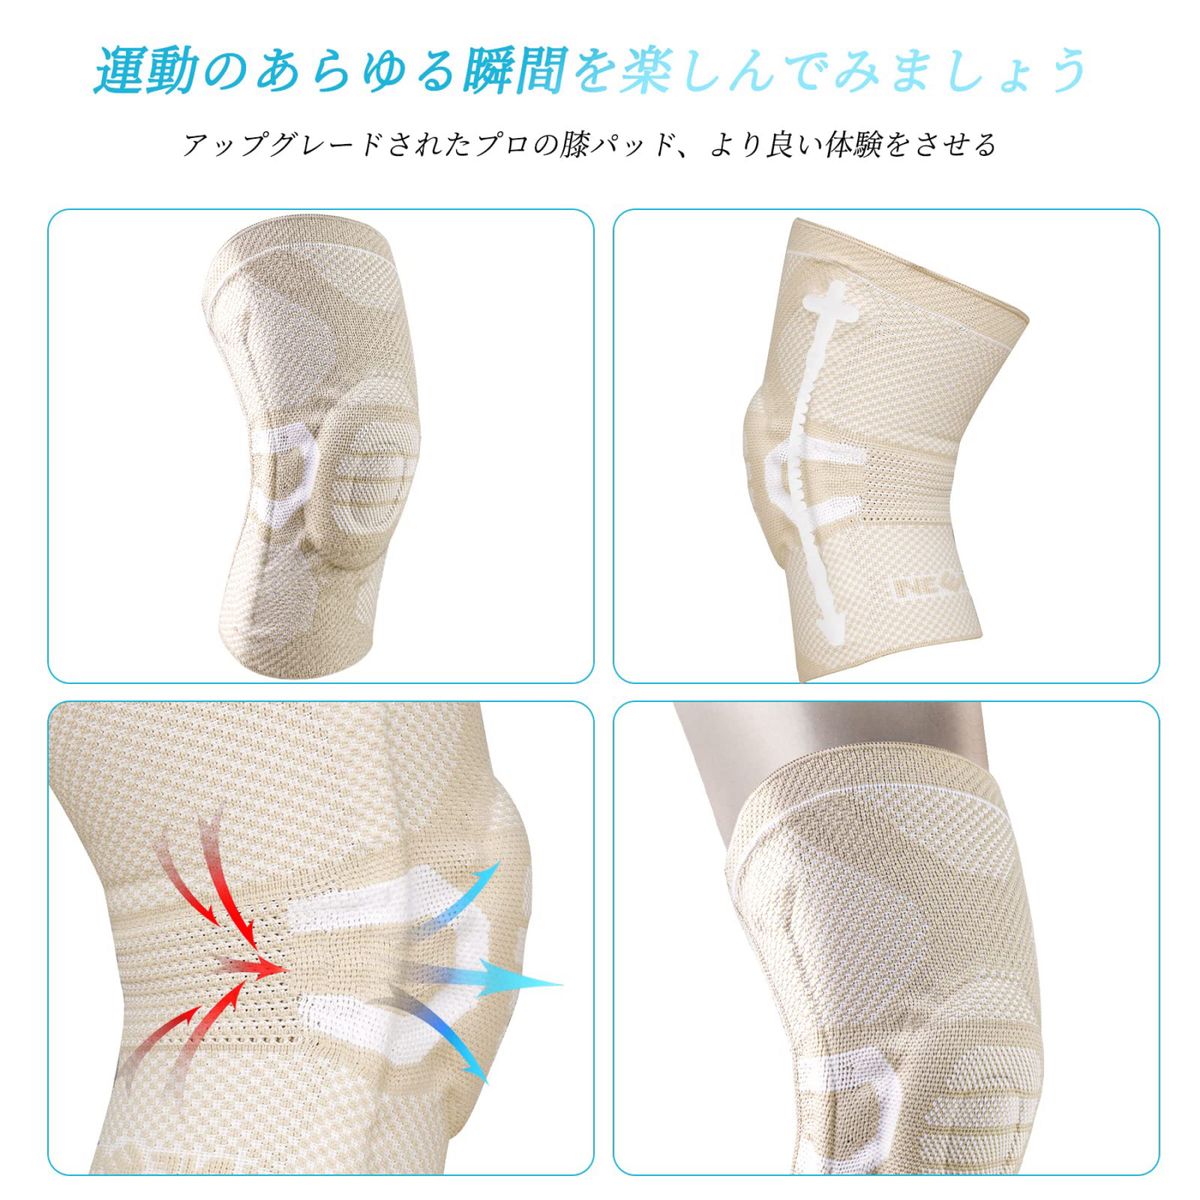 膝サポーター 夏用 半月板サポーター 靭帯損傷 ひざ用サポート(L, ベージュ) NEENCA